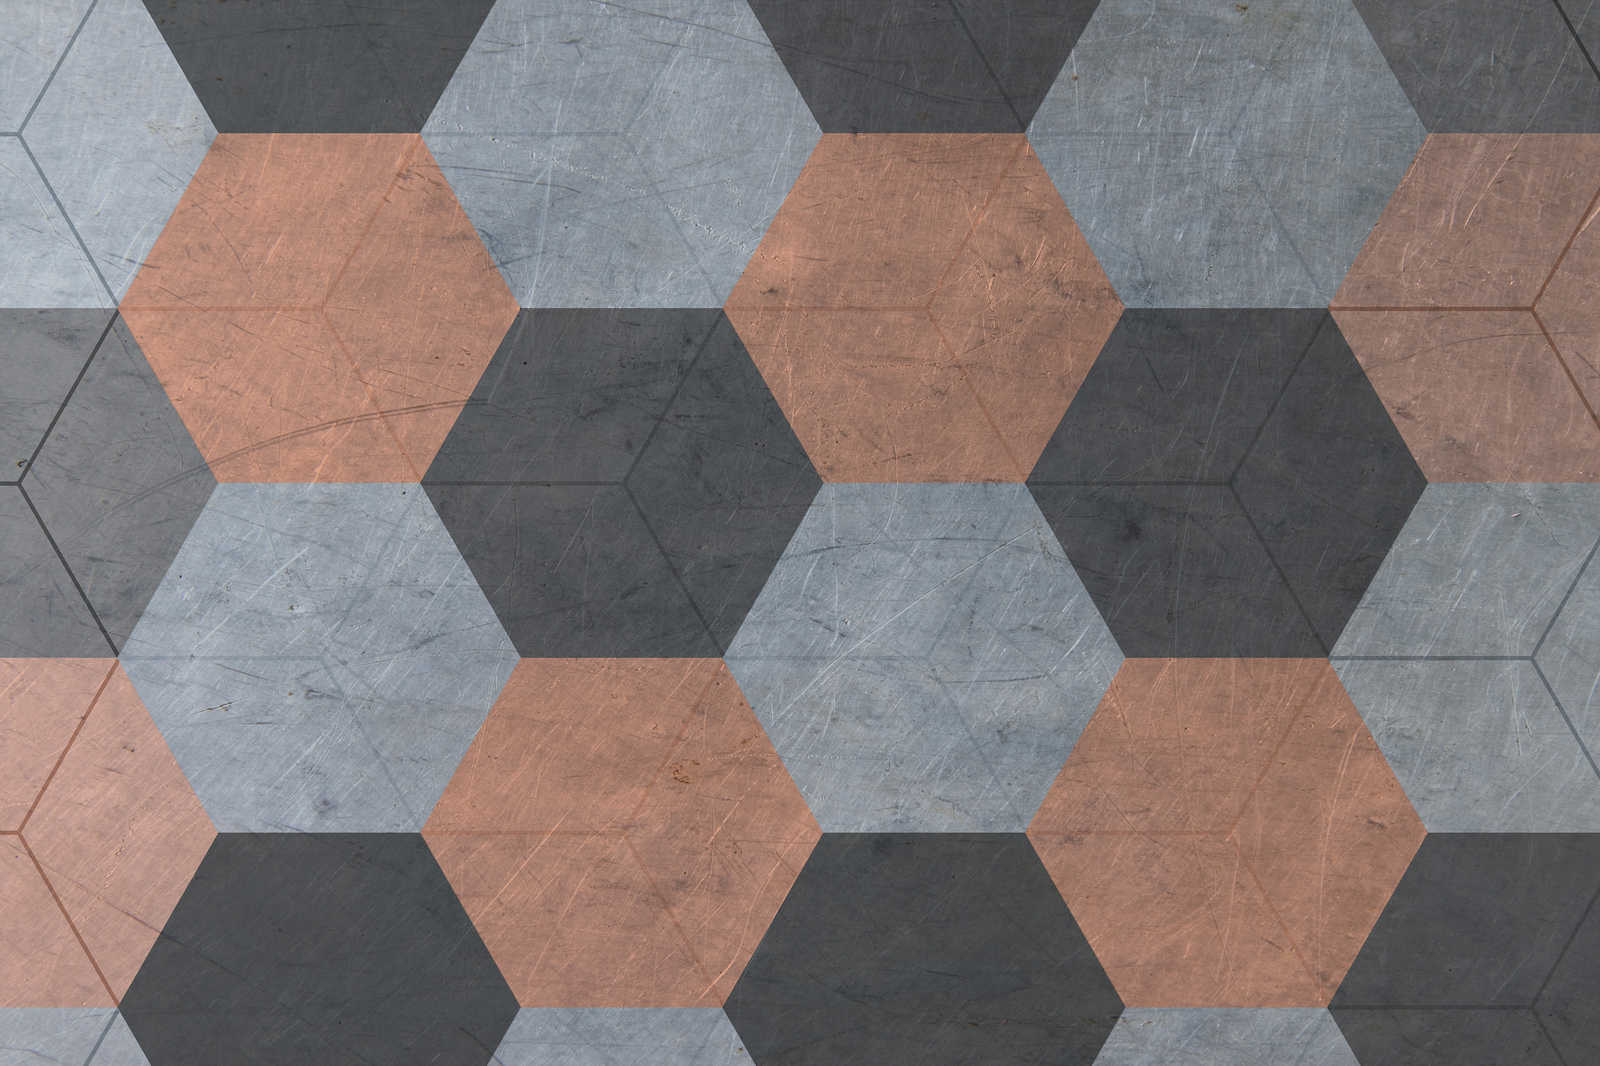             Tableau toile avec carreaux hexagonaux style vintage - 0,90 m x 0,60 m
        